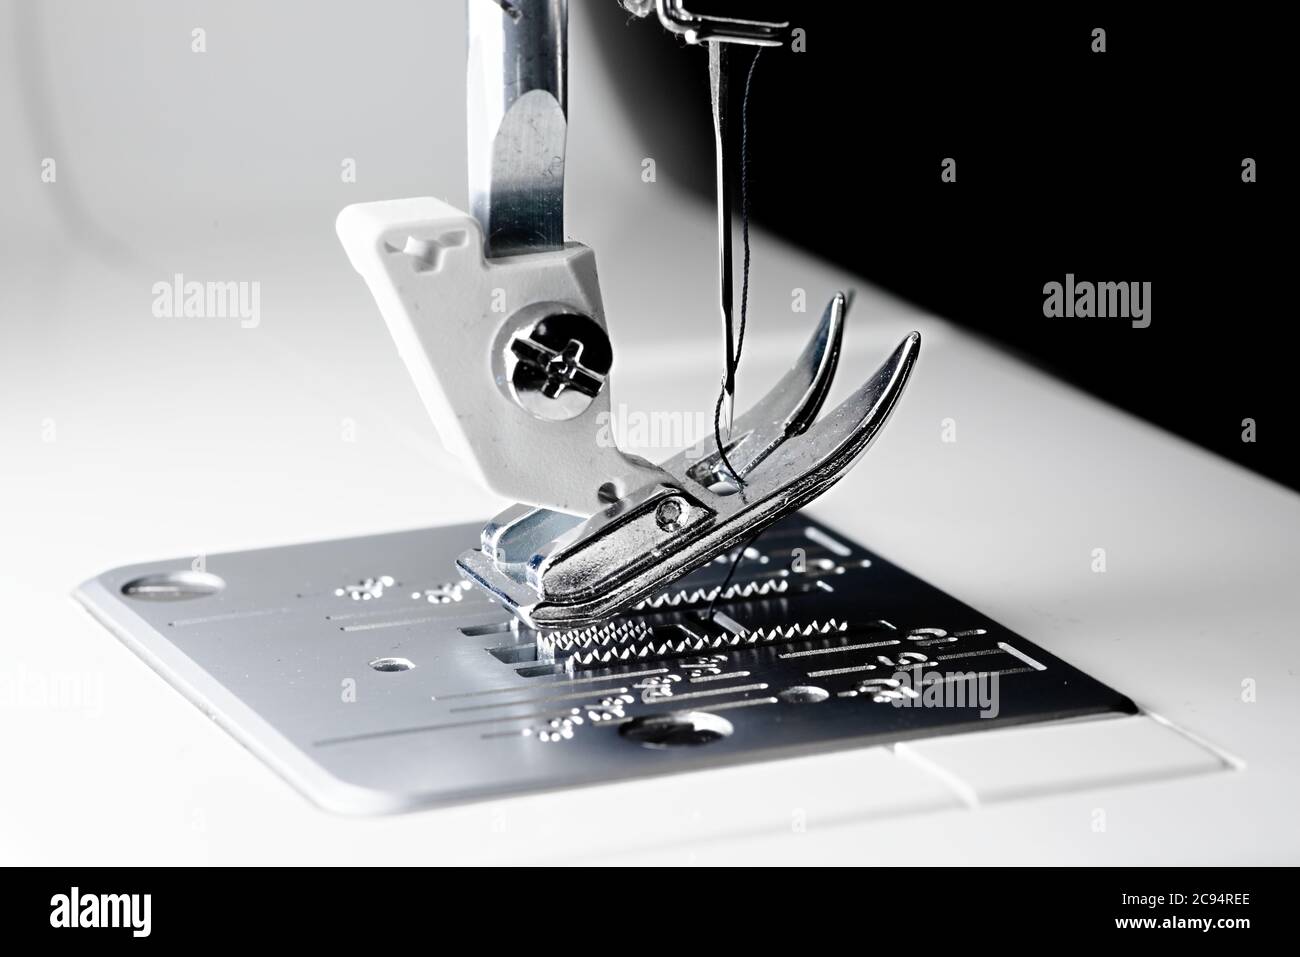 3 - Schließen Makro Nähmaschinenbild mit selektivem Fokus zeigt Nadel, Faden, Presser Fuß, Futterhunde und Kehlplatte. Stockfoto